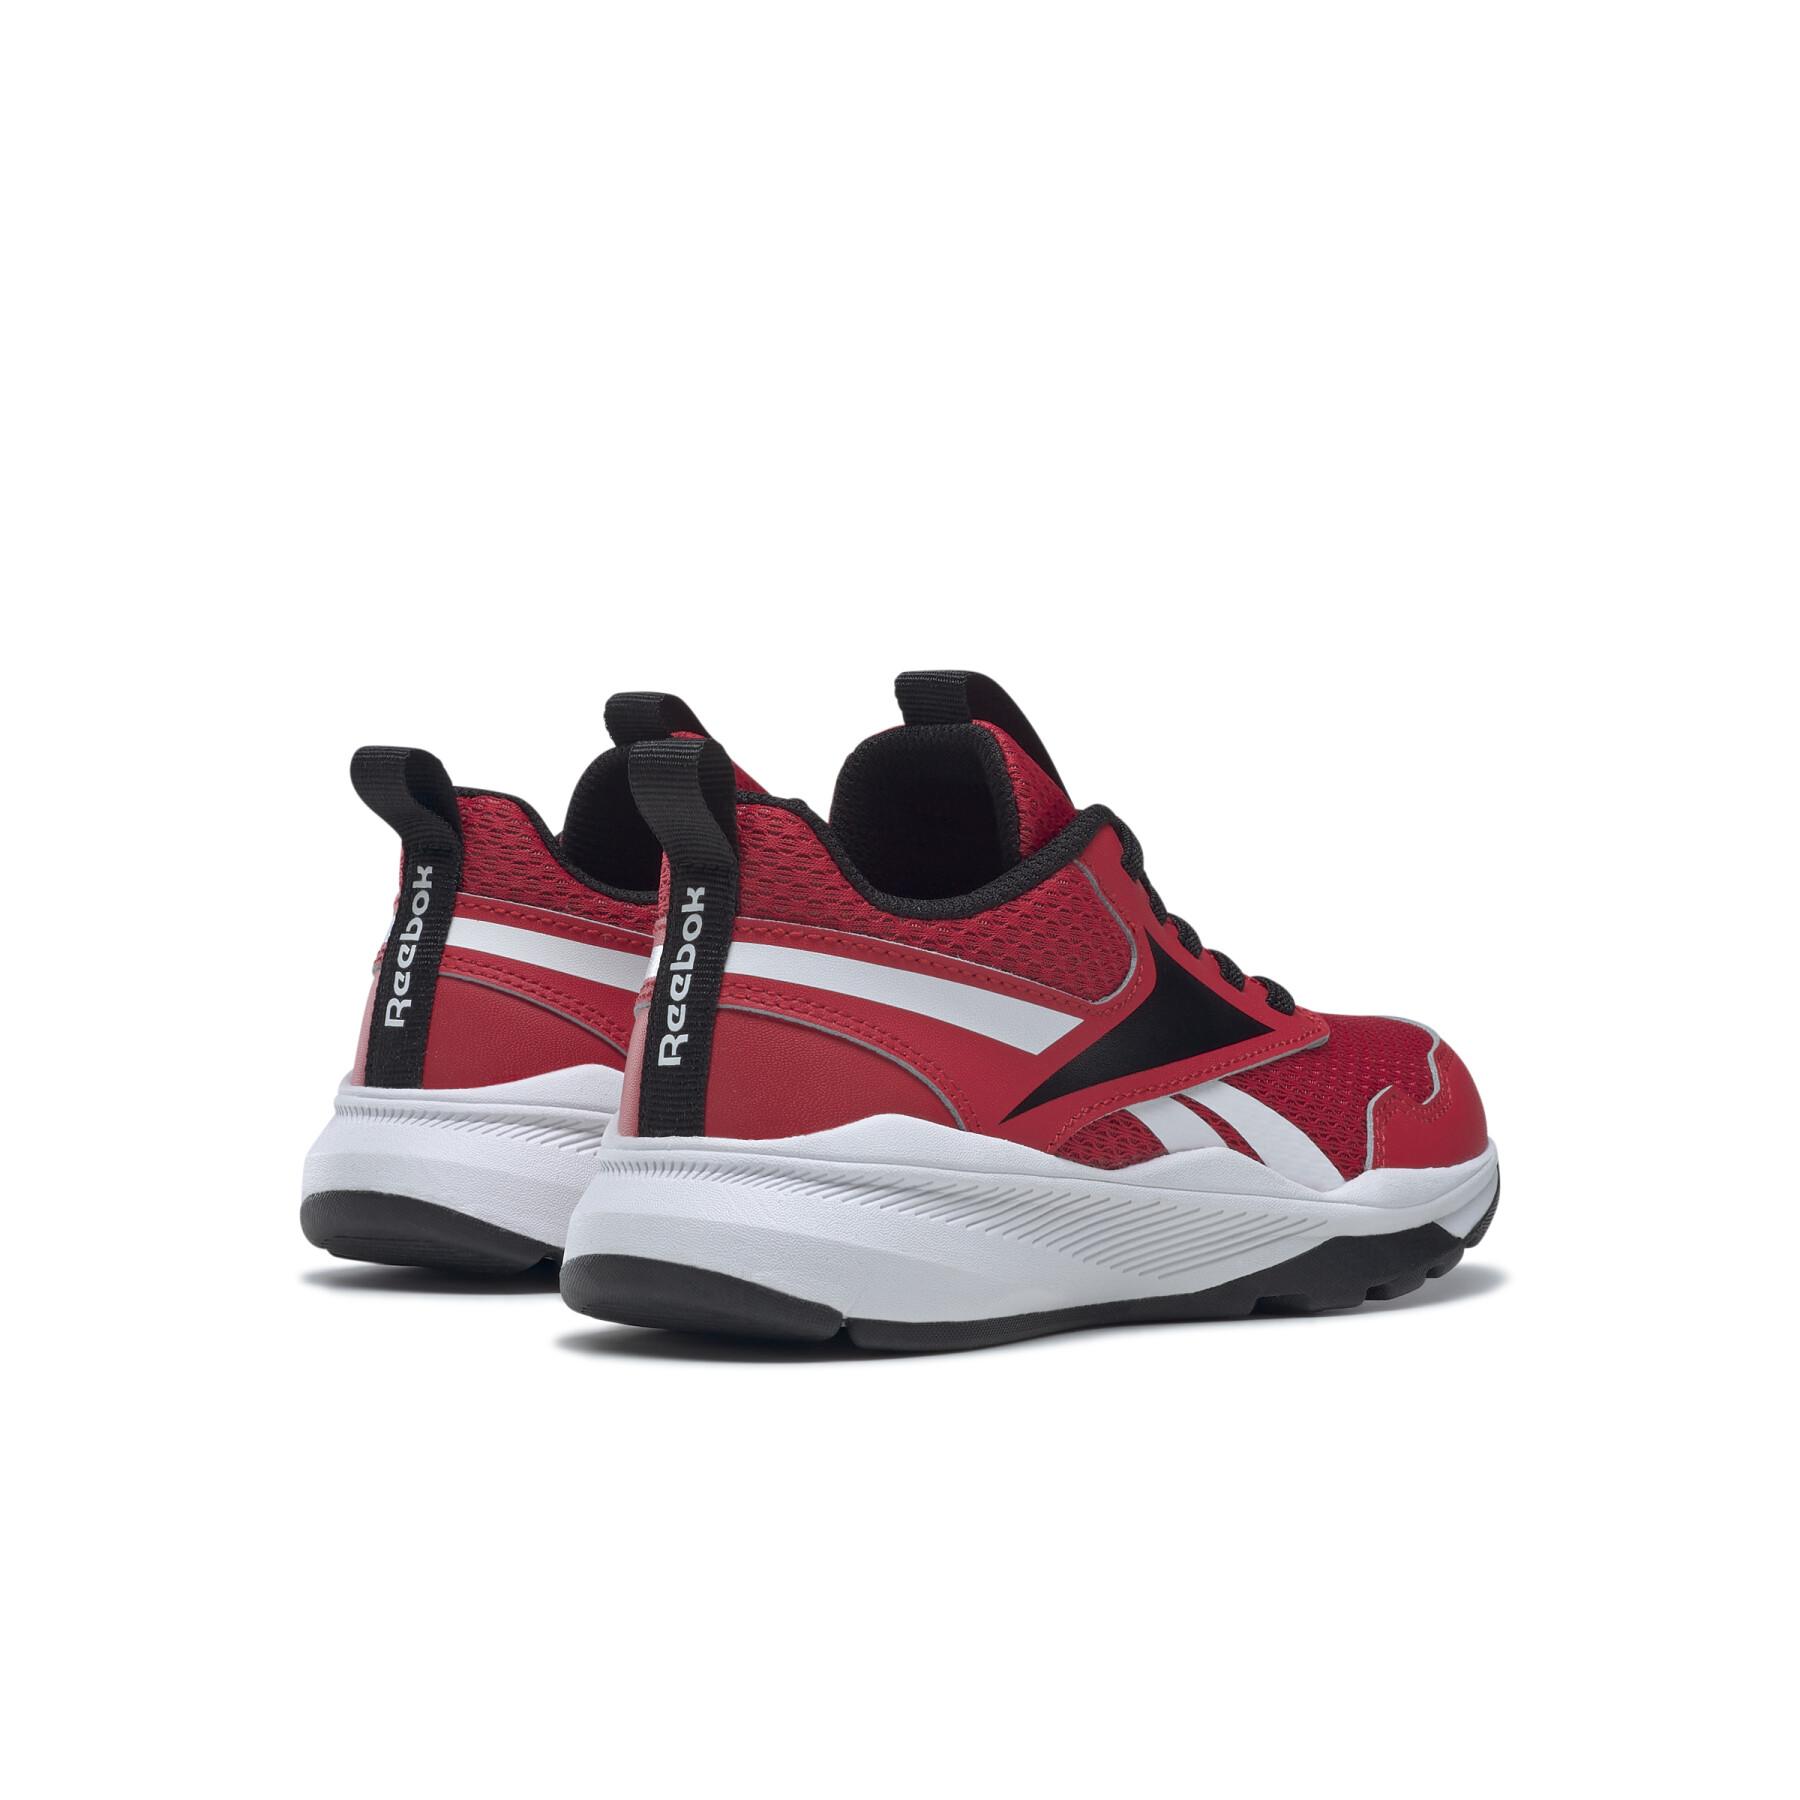 Chaussures de running enfant Reebok Xt Sprinter 2 Alt